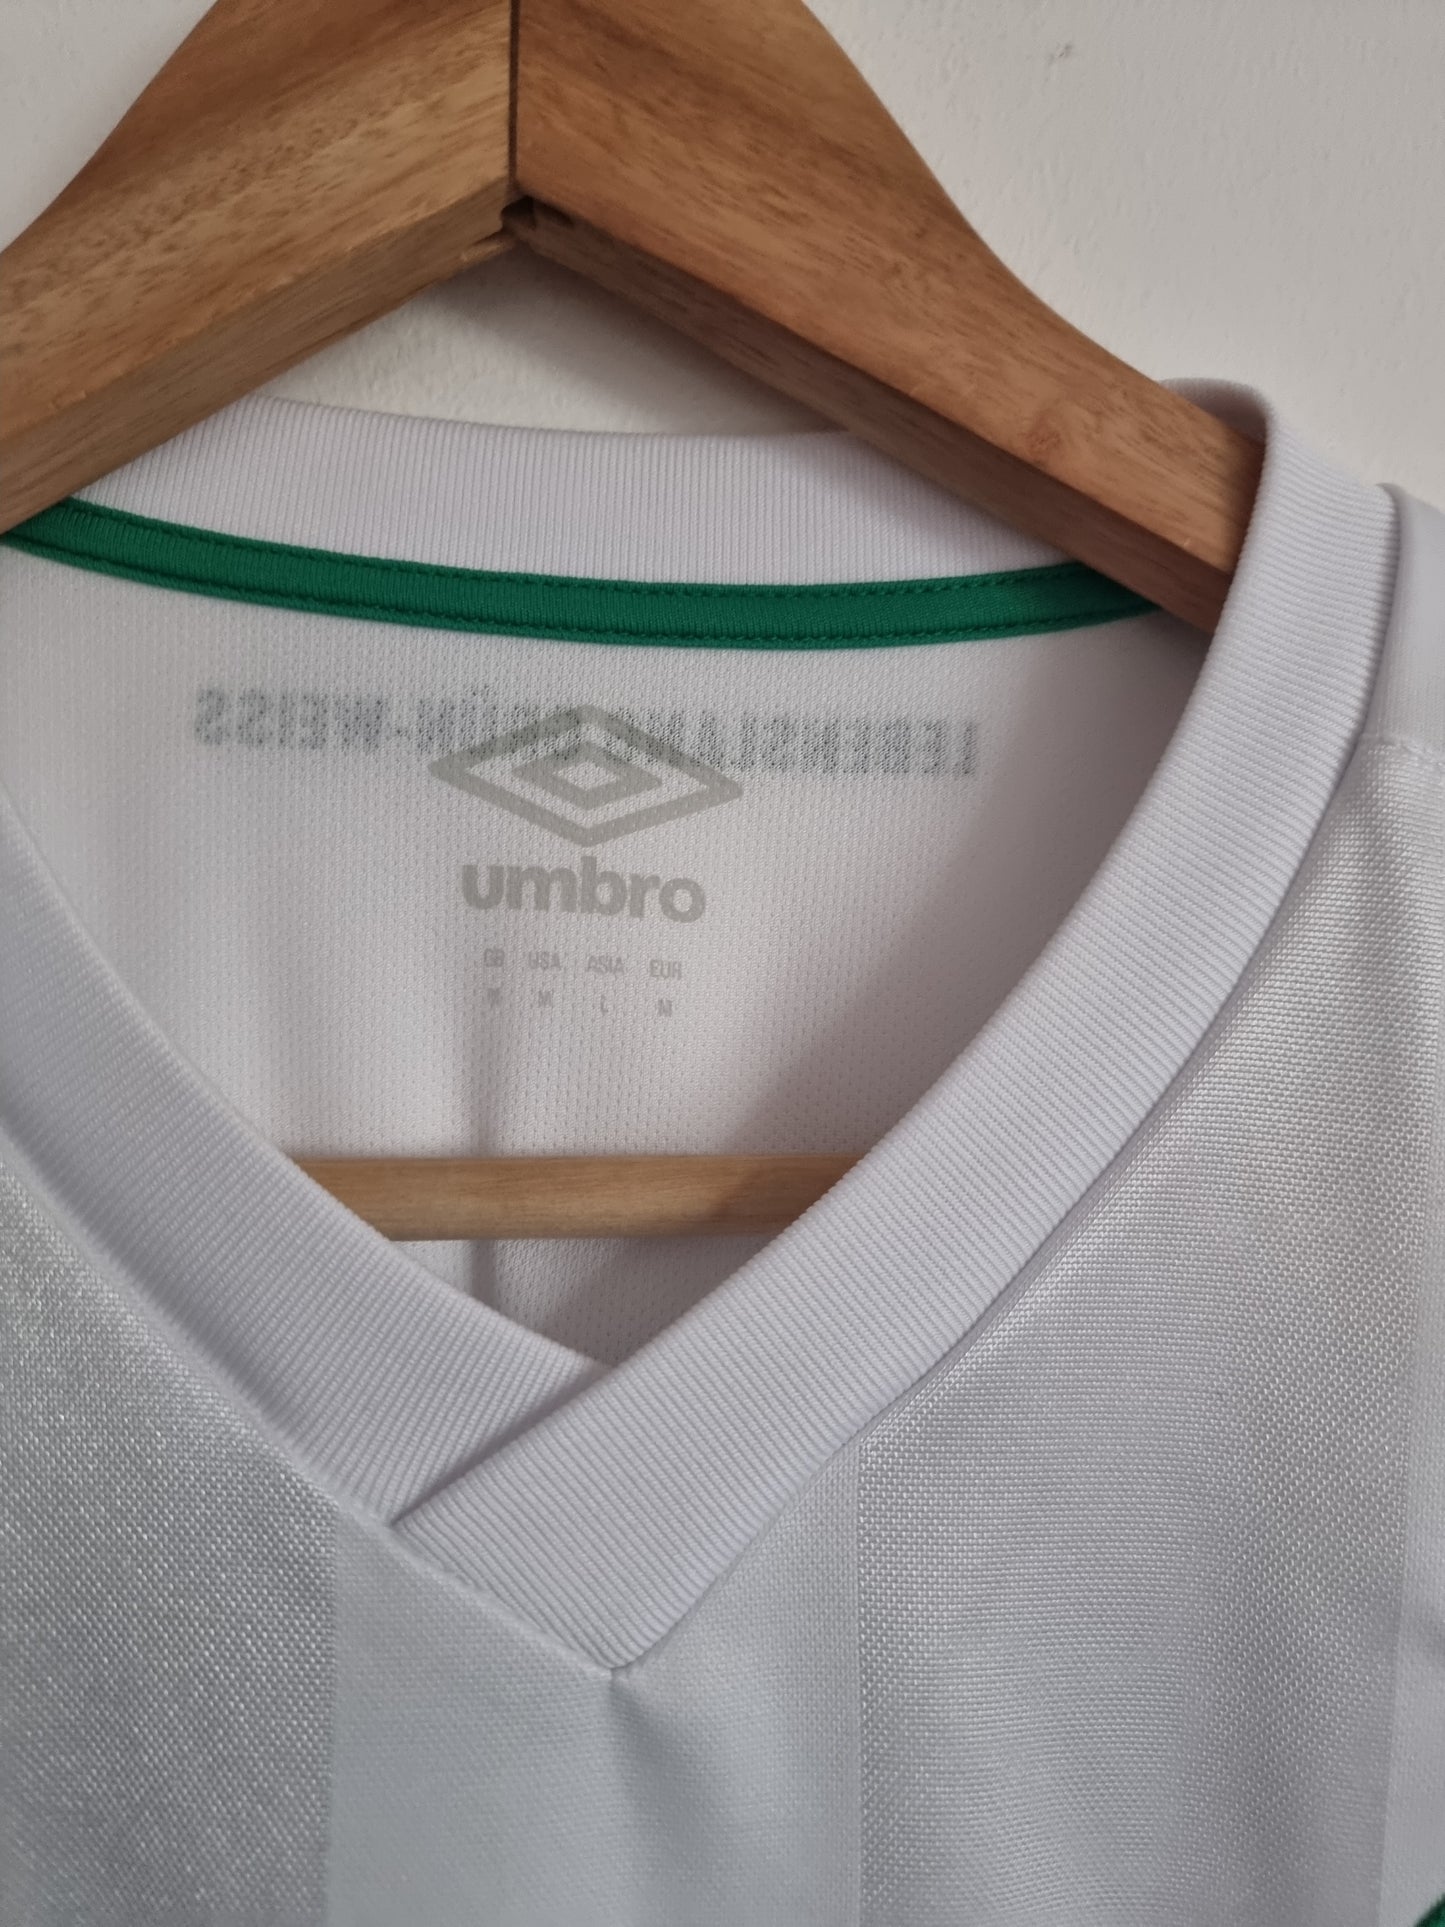 Umbro Werder Bremen 2 U23 19/20 Regionalliga Away Shirt Medium